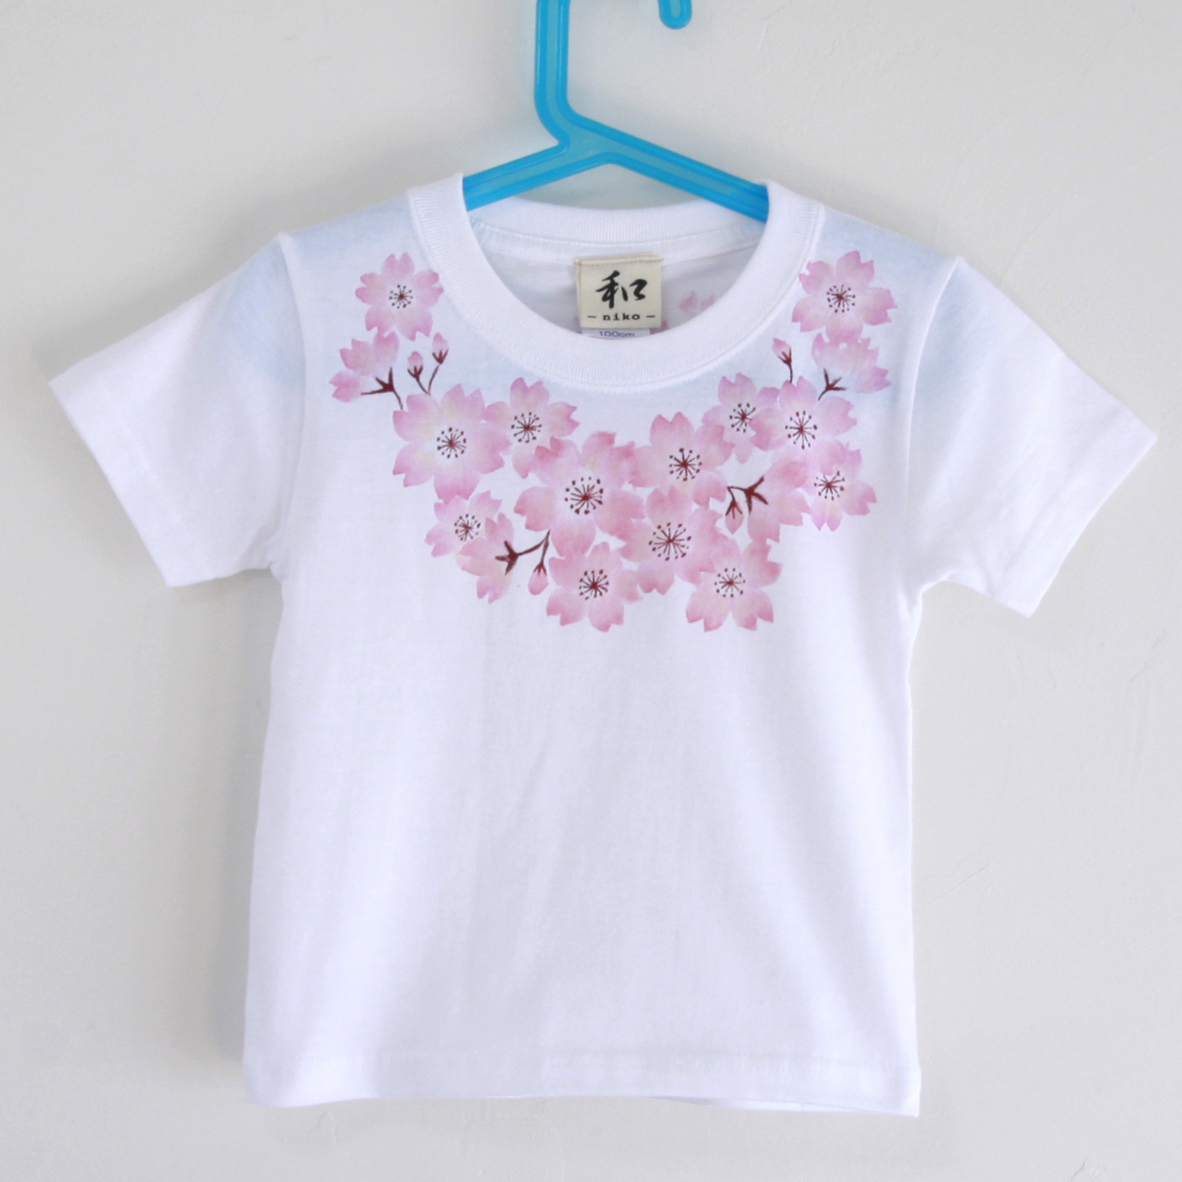 童装 儿童T恤 120码 白色胸花樱花图案T恤 手工手绘T恤 日式图案春季礼物, 最高额, 短袖T恤, 120(115~124cm)